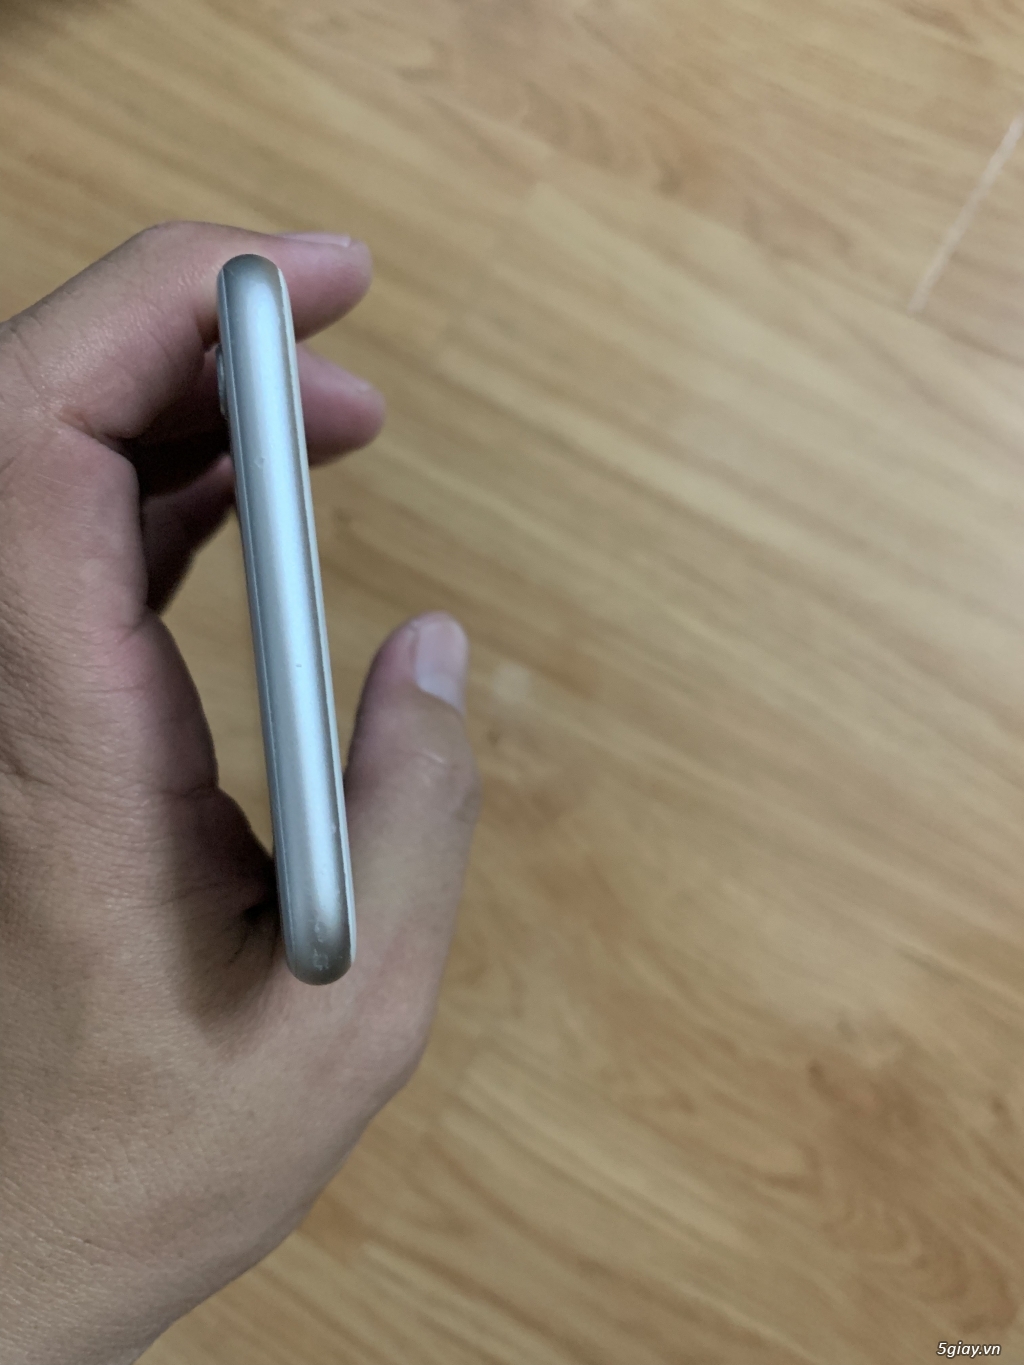 Bán Iphone 6s Plus 64Gb quốc tế White, giá rẻ - 2